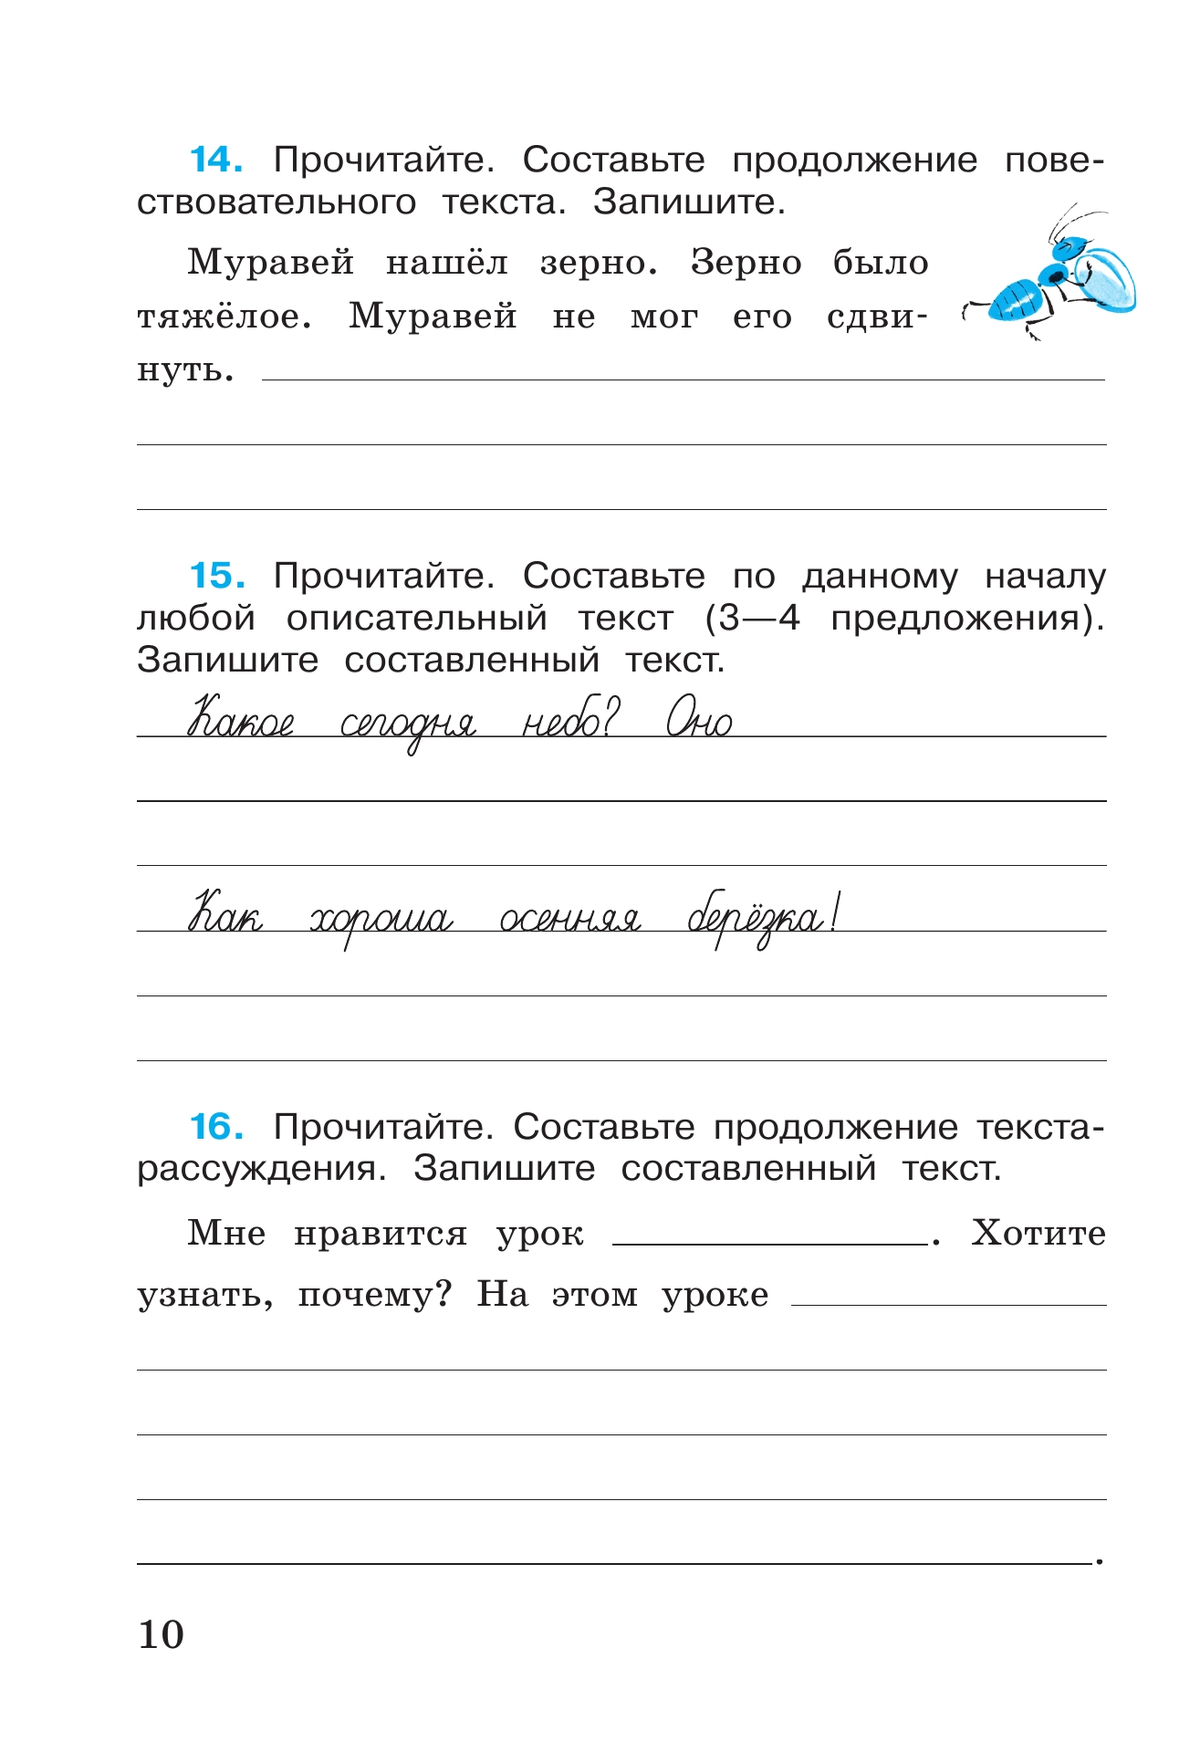 Русский язык. Рабочая тетрадь. 4 класс. В 2 частях. Часть 1 3